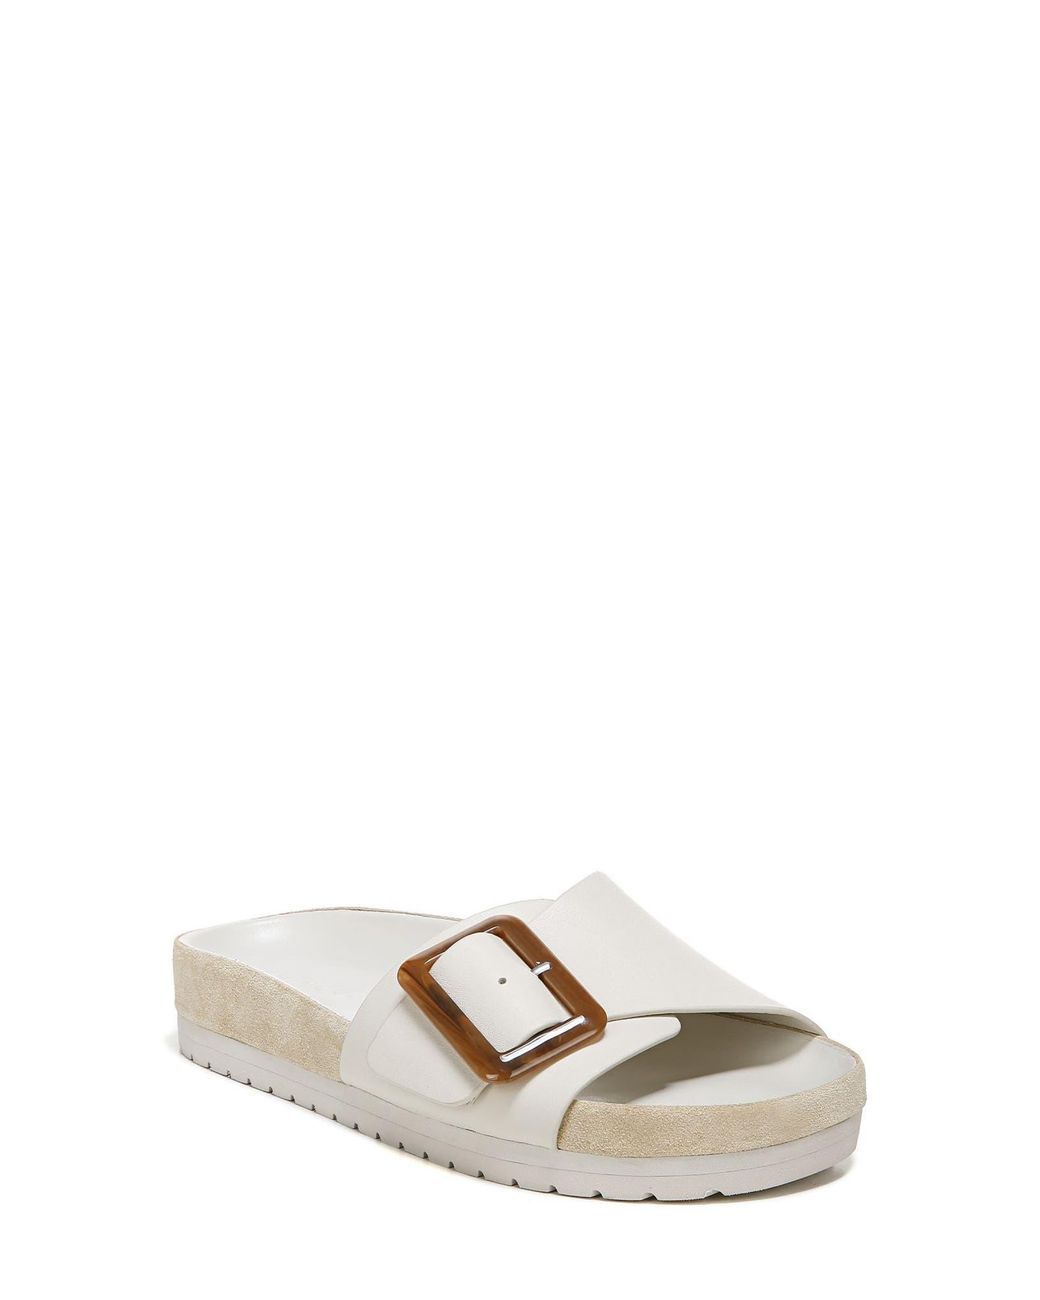 Vince Grant Slide Sandal in White | Lyst